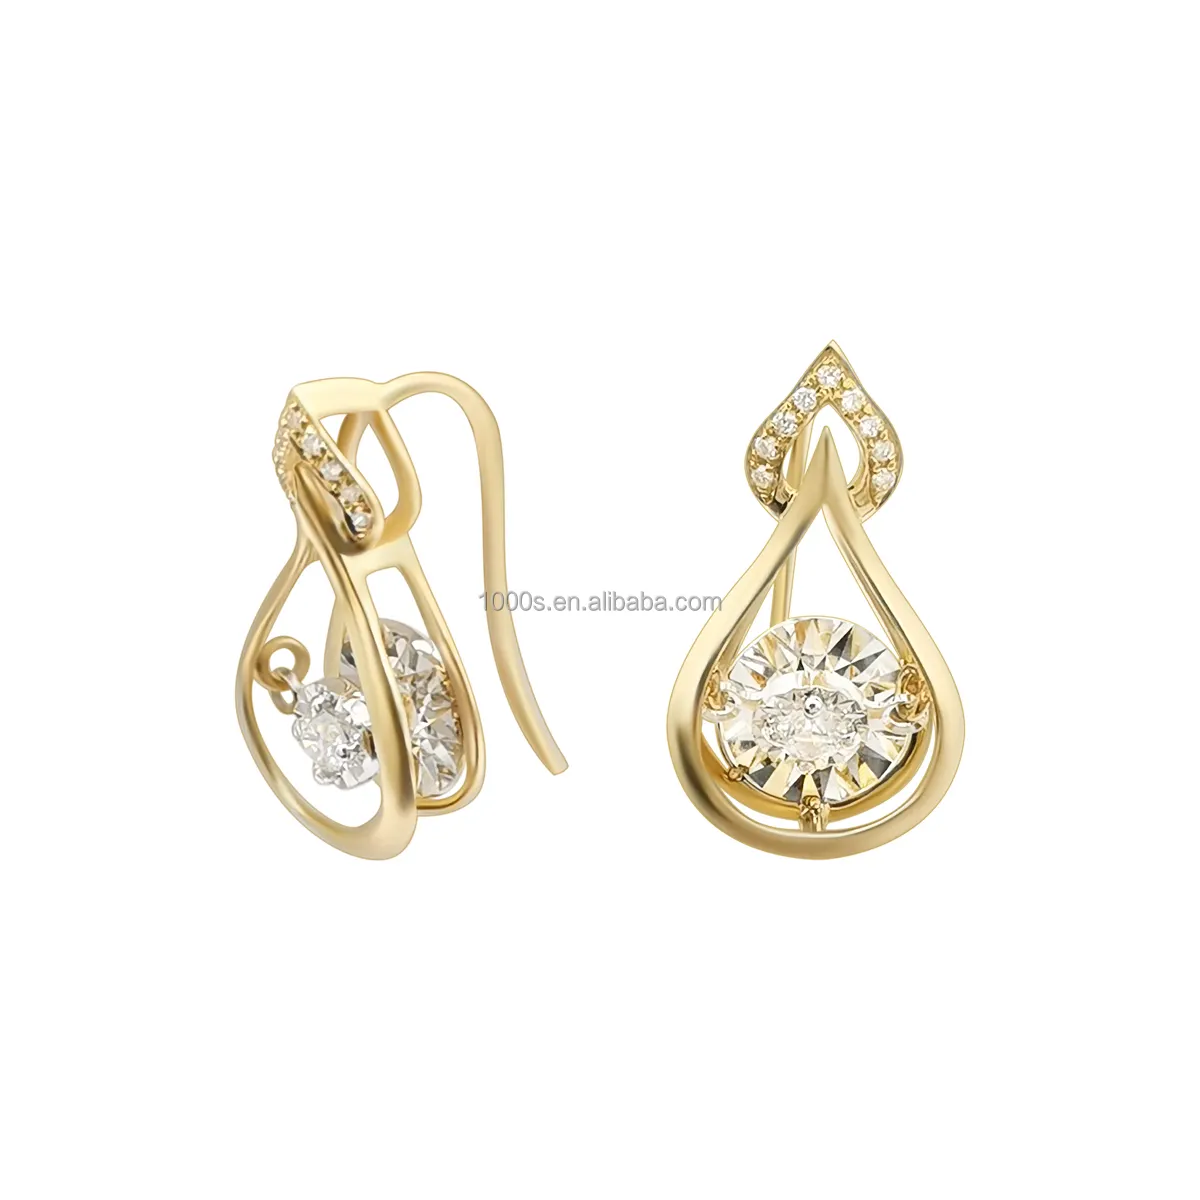 Brincos de diamante de dança naturais 18k, joias finas de ouro liso e douradas com pedra de movimento em formato de gota